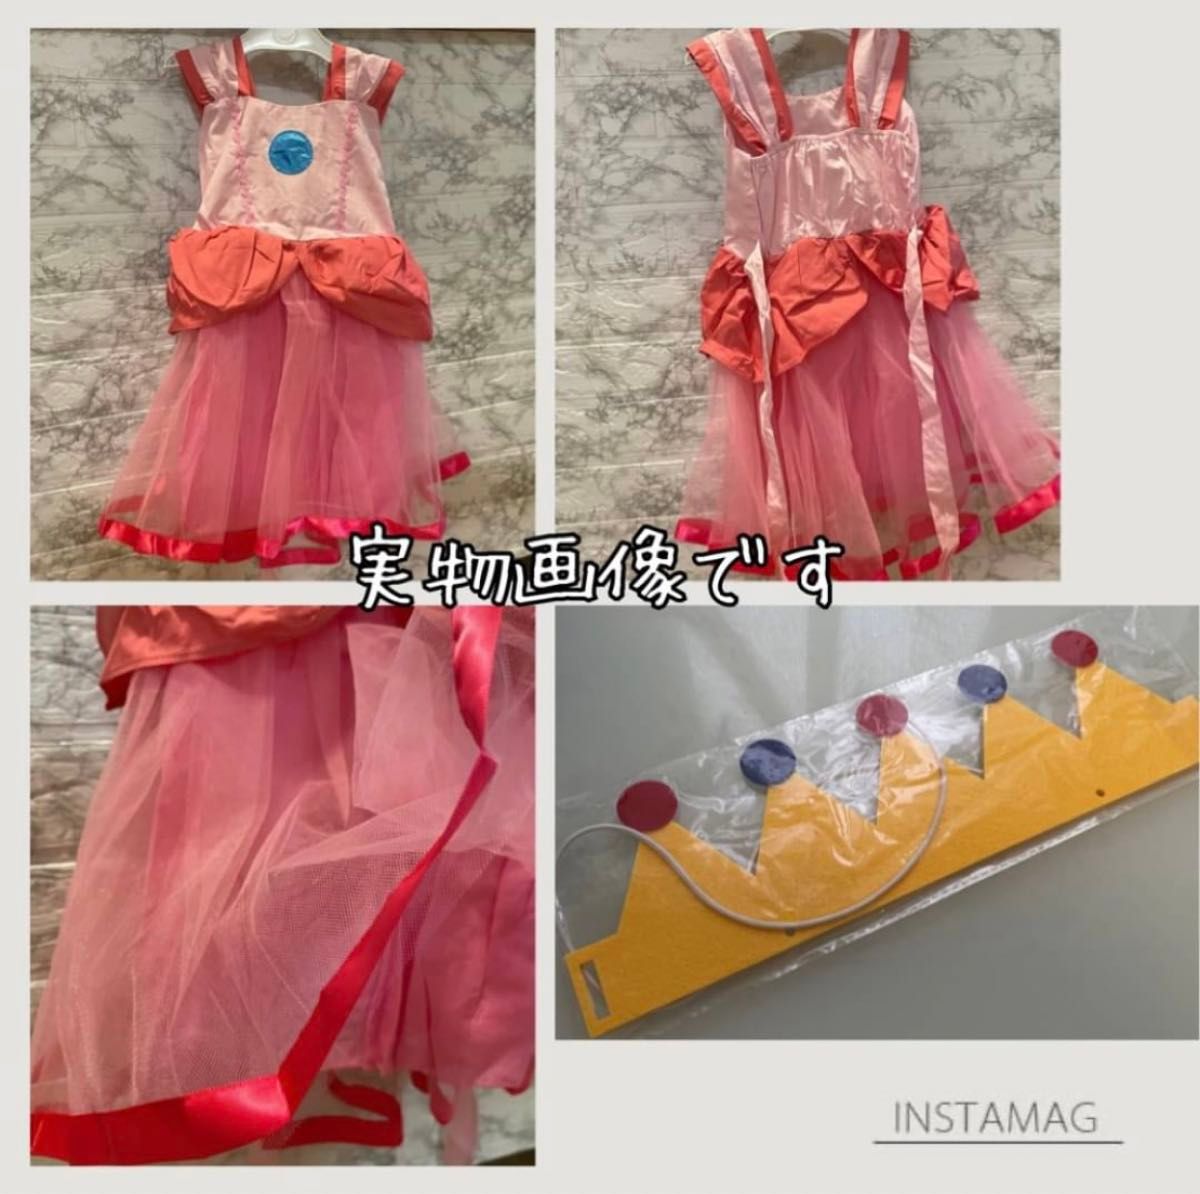 新品未使用 100 ピーチ姫 ドレス コスチューム 仮装 こども コスプレ USJ ユニバ 王冠付き キッズ 女の子 子供